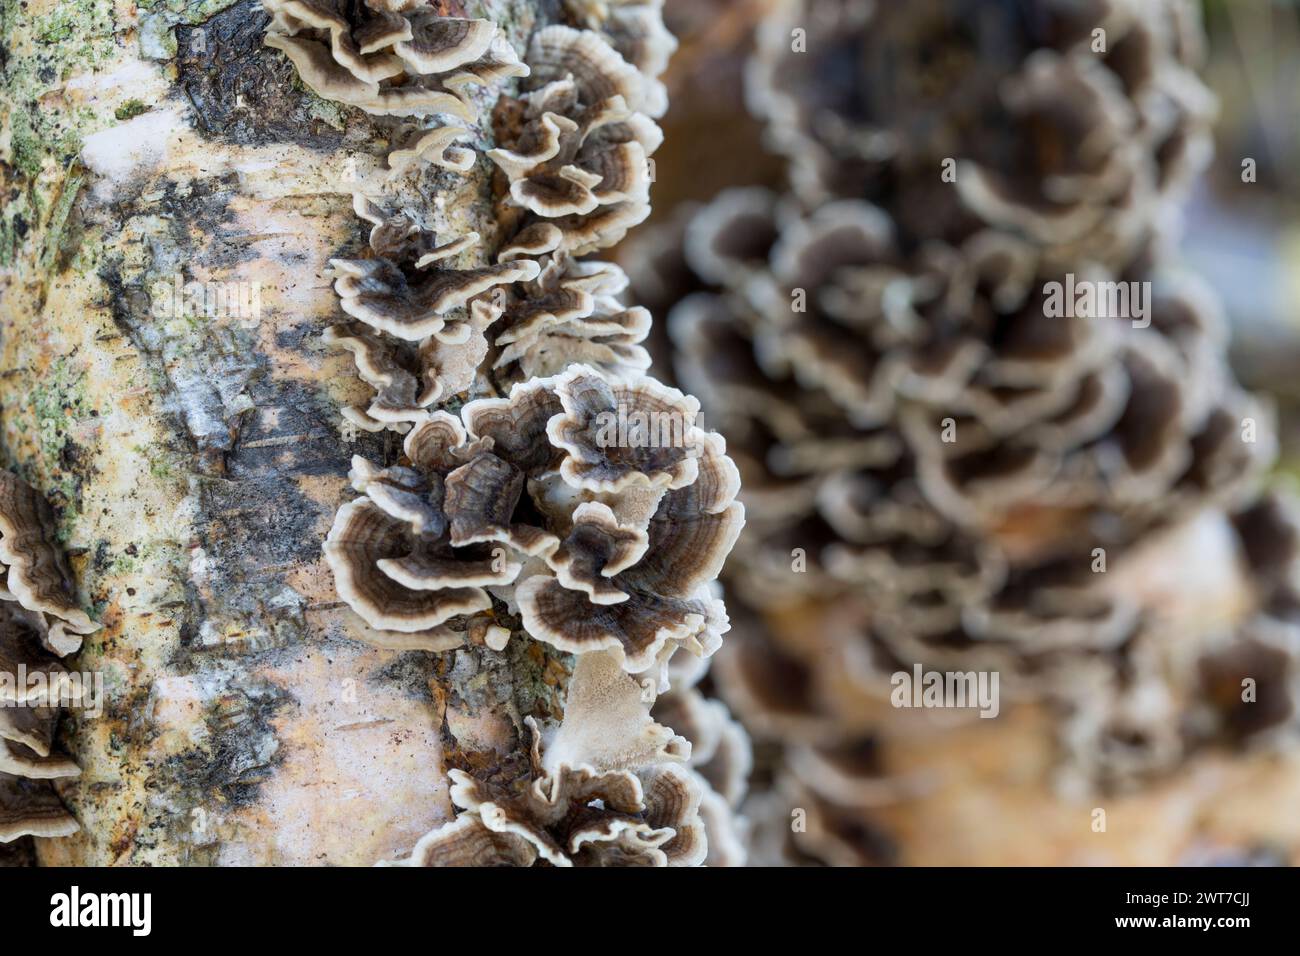 Funghi di coda di tacchino (Trametes versicolor) provenienti da tronchi di betulla inoculati coltivati come coltura commerciale. Powys, Galles. Novembre... Foto Stock